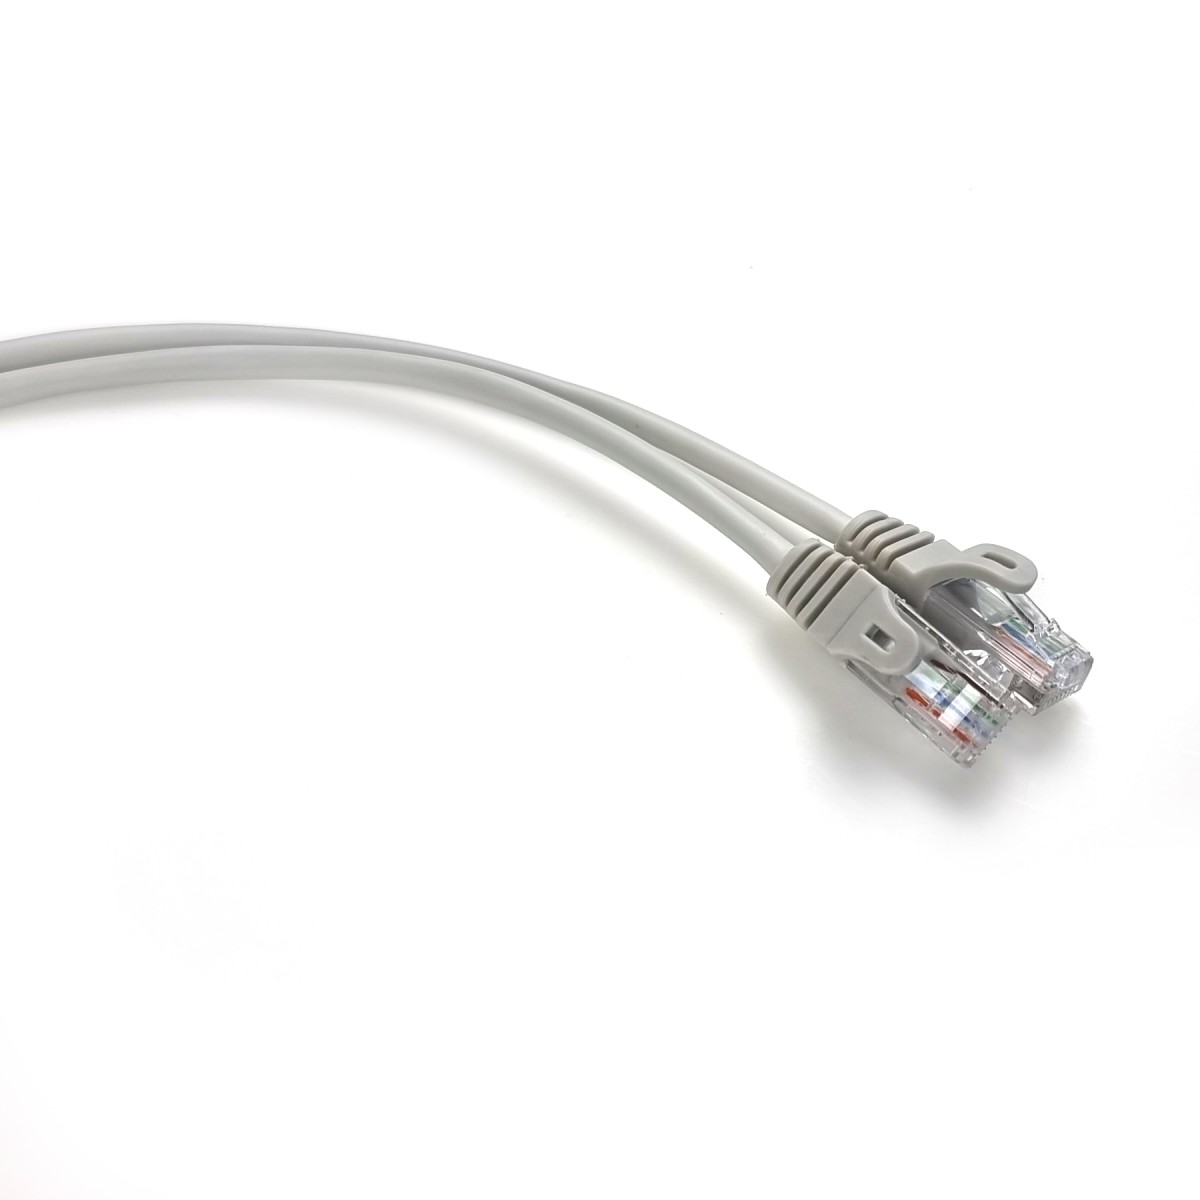 Інтернет кабель 1,5м UTP литий сірий RJ45 кат. 5е 256_256.jpg